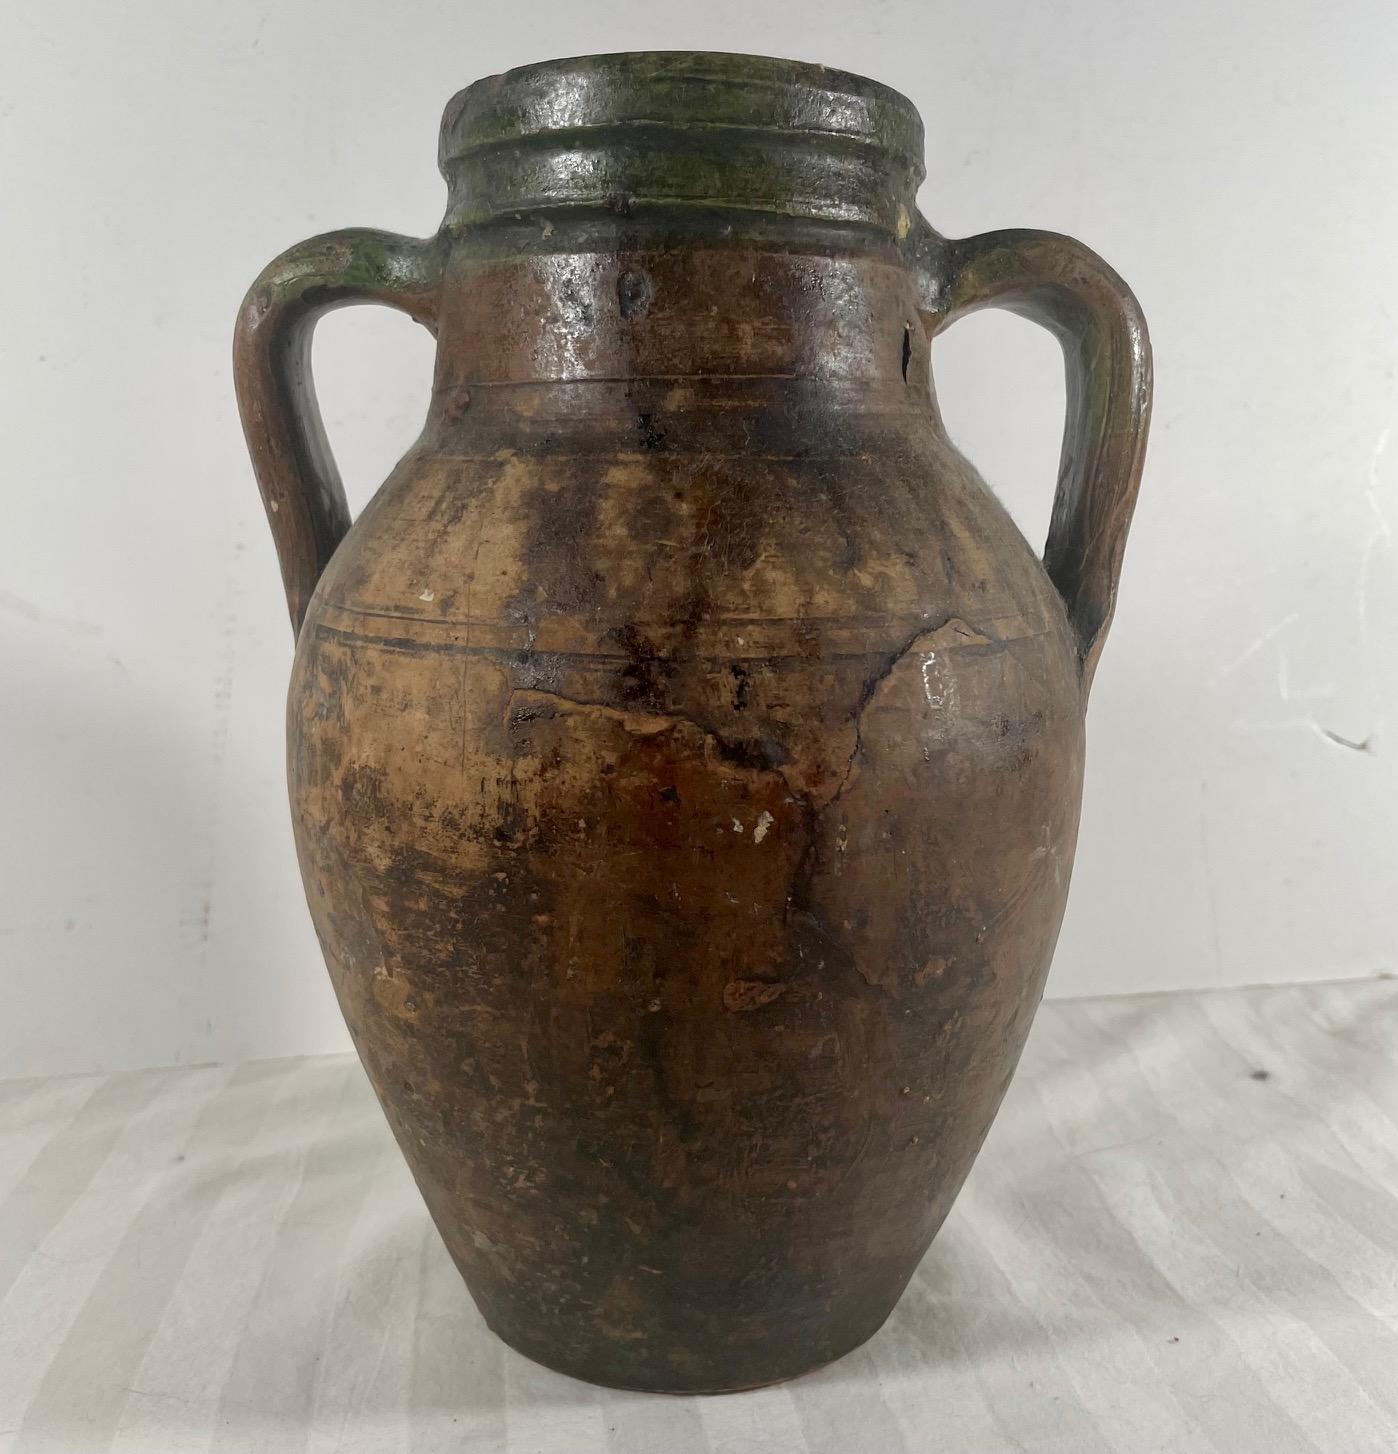 Antike Terrakotta Amphora Olivenöl Topf. 

Diese europäische Terrakotta-Amphore wurde wahrscheinlich für die Lagerung und den Transport von Olivenöl verwendet. Der Krug mit doppeltem Henkel ist um die Mündung herum grün bemalt und weist am